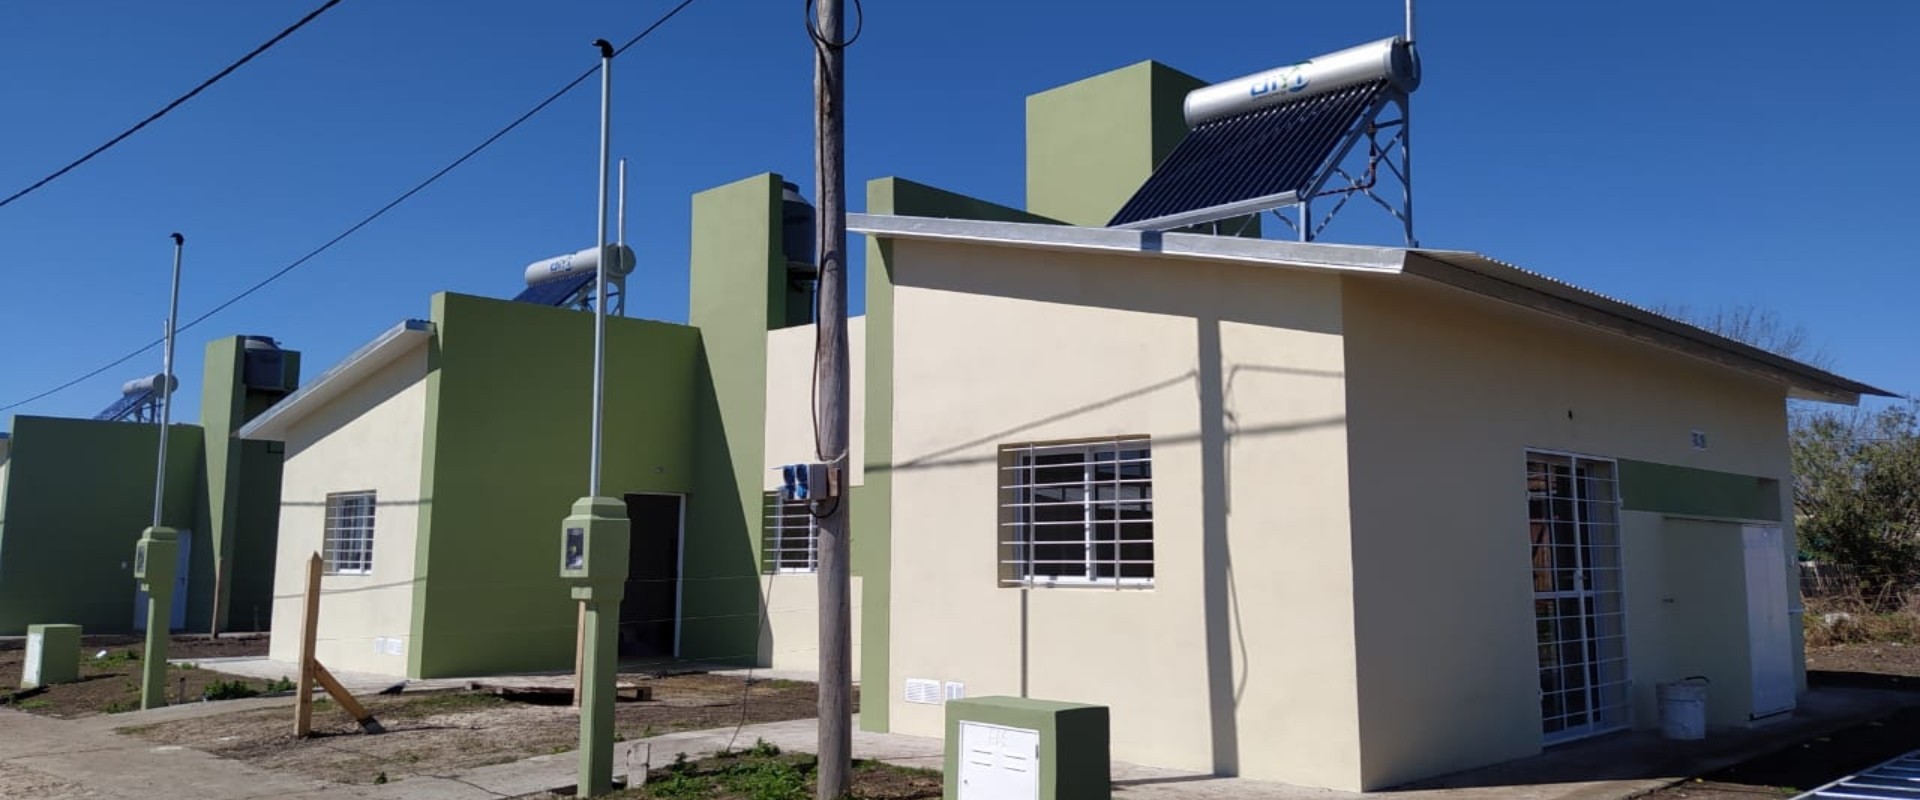 Con fondos provinciales se construyen nuevas viviendas en cinco localidades entrerrianas